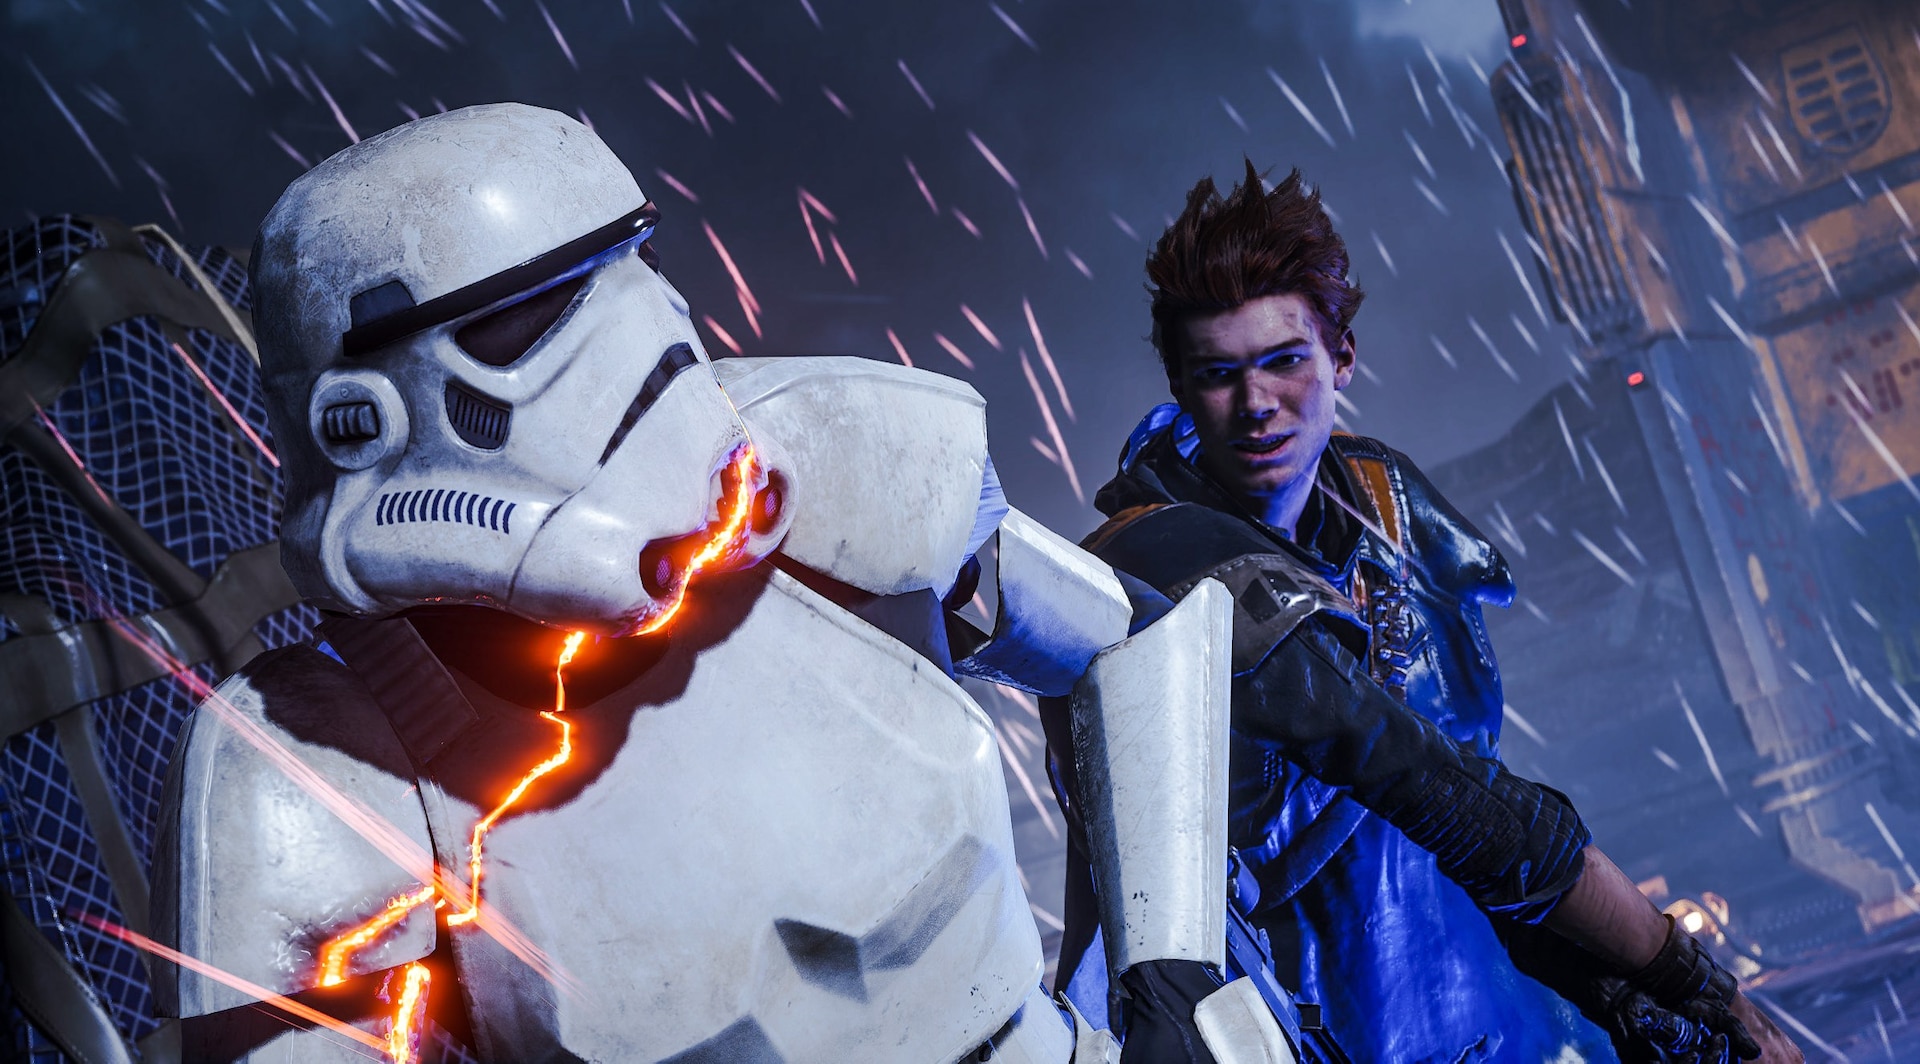 Get More STAR WARS Jedi: Survivor with EA Play Pro